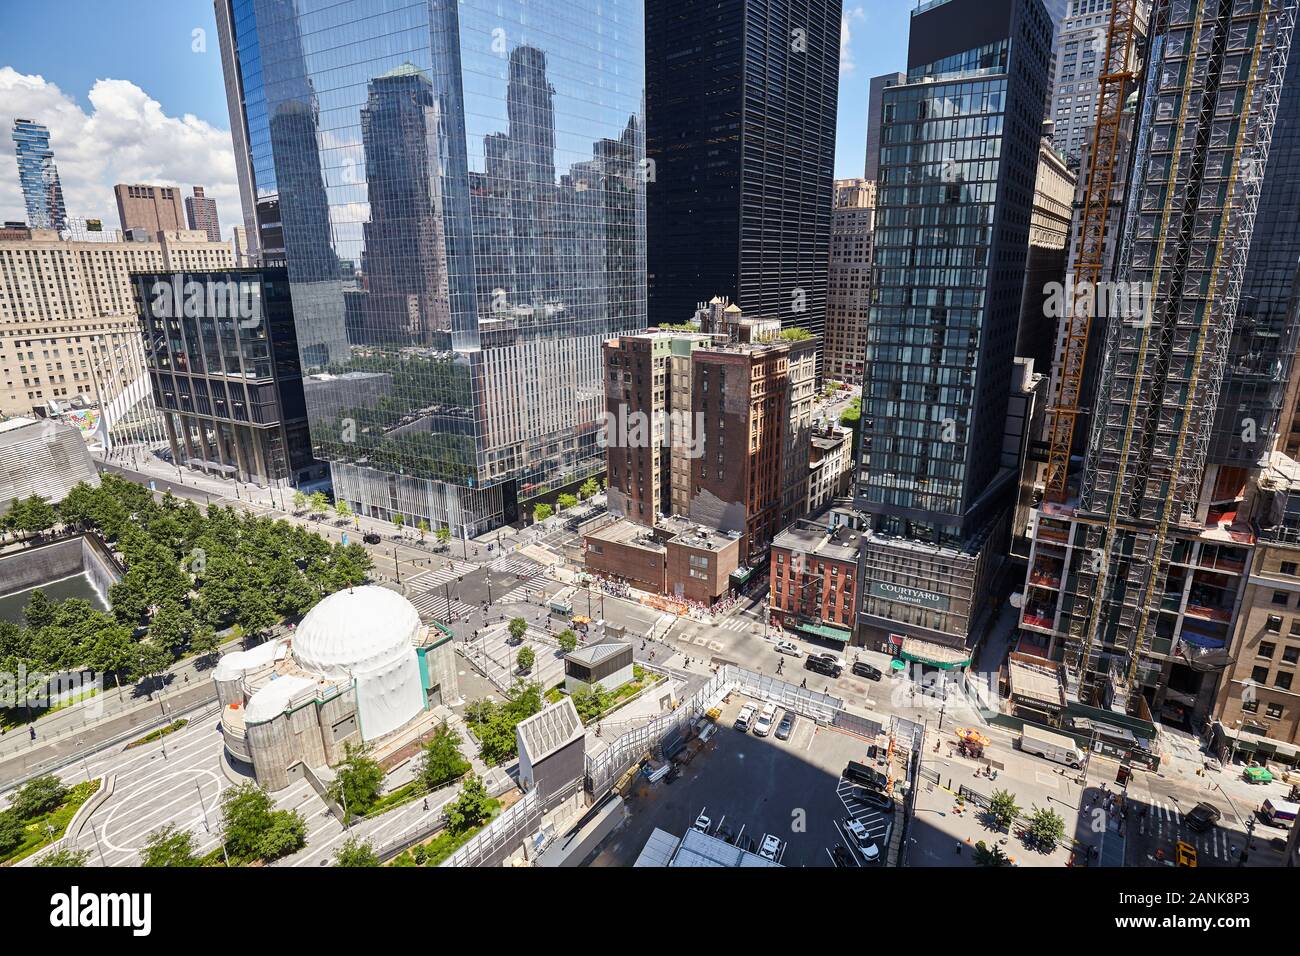 New York, USA - Juli 05, 2018: Die geschäftige New York City modernen Stadtzentrum von oben gesehen. Stockfoto